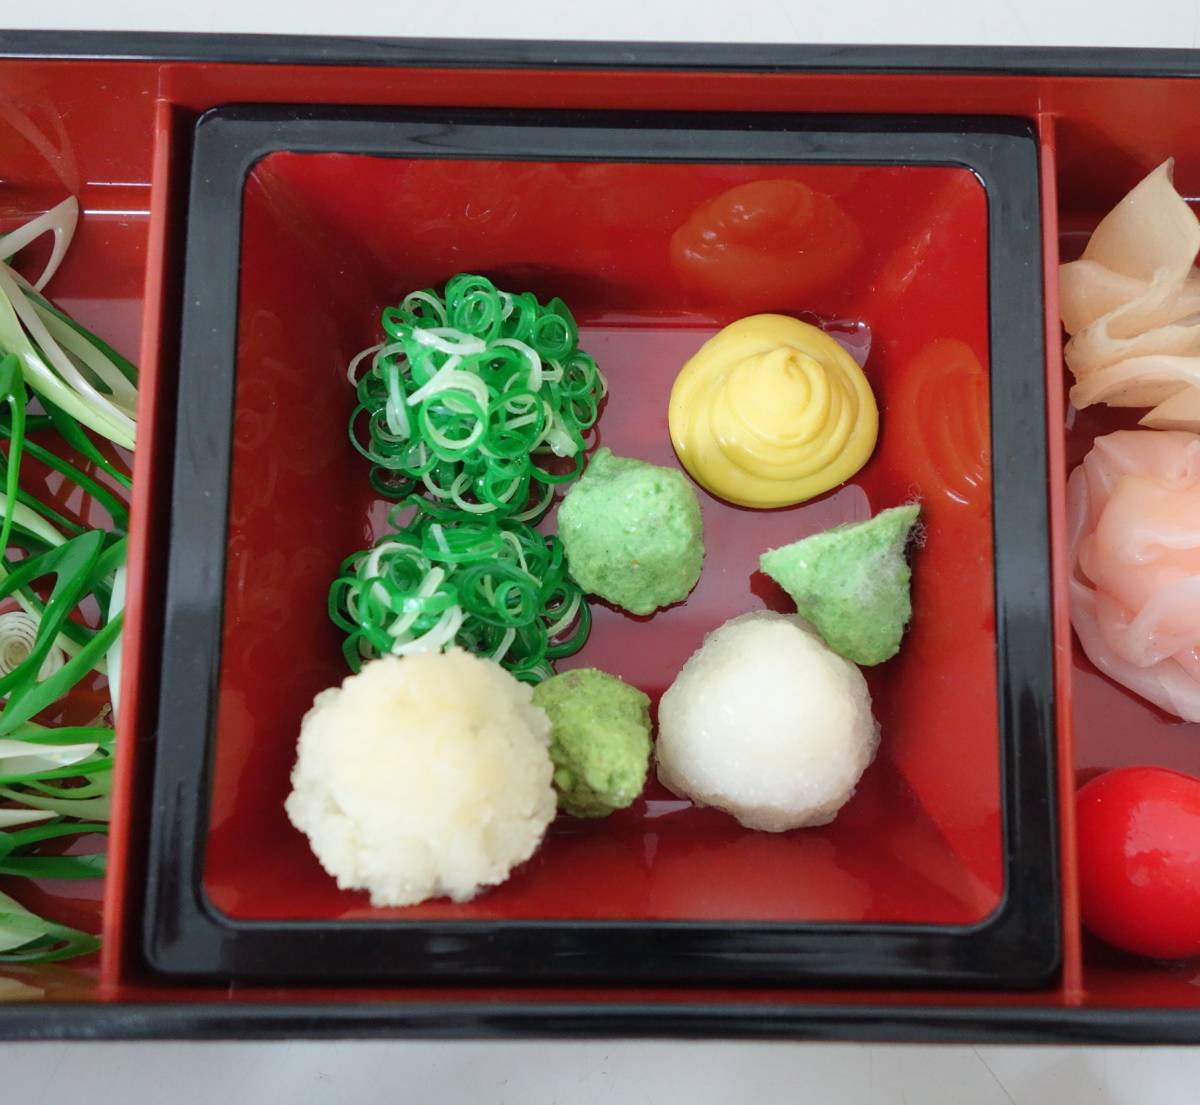  образец блюда retro * соба соба udon Япония кулинария приправа . маленькая миска материалы и т.п. совместно ветка бобы яйцо жарение абельмош ... лук порей и т.п. и т.п. 